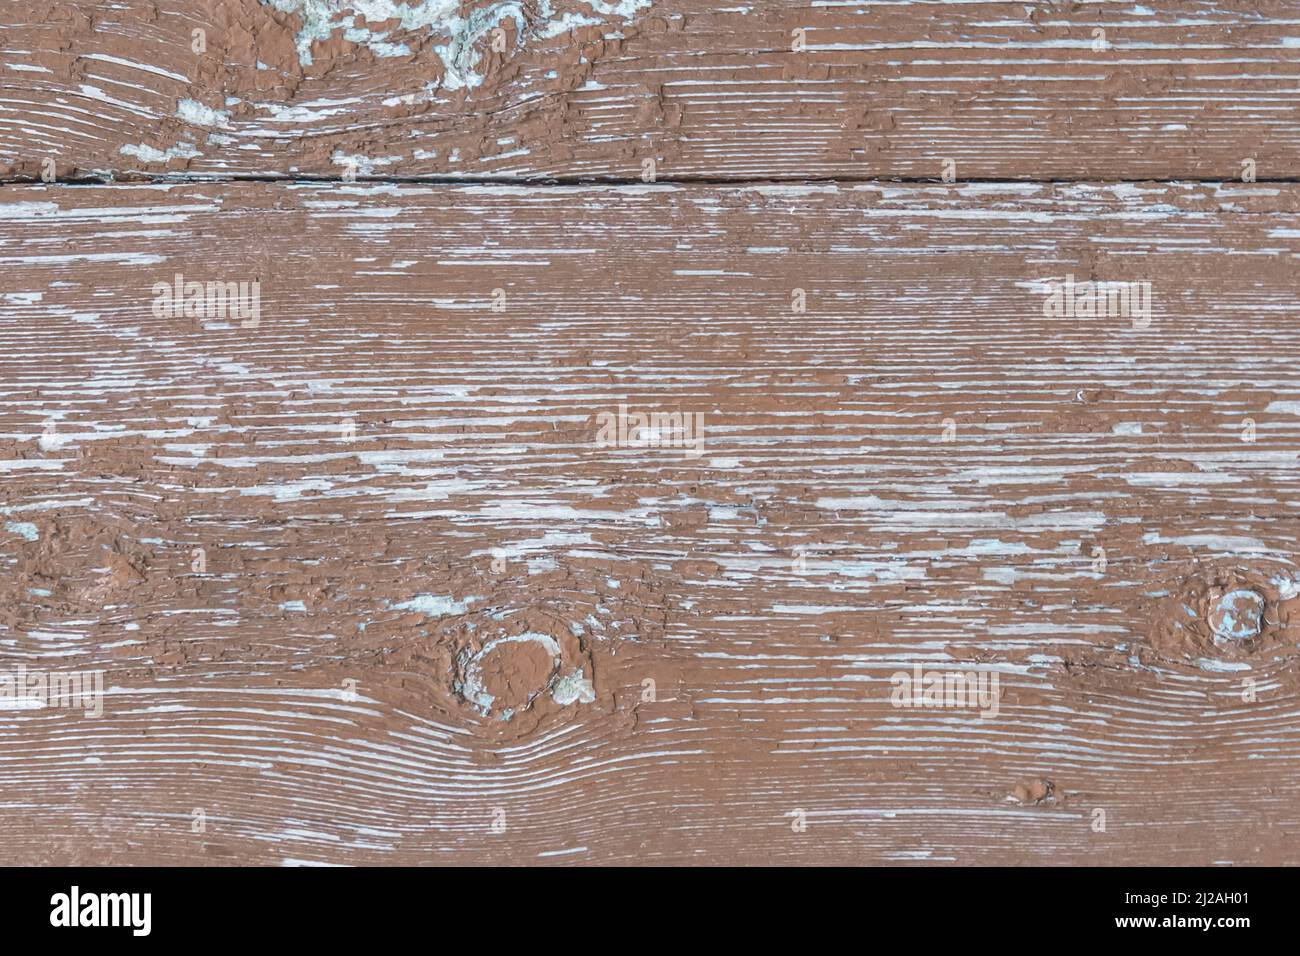 Vieux panneaux de clôture usés en bois texture abîmée brun sale obsolète arrière-plan de la planche. Banque D'Images